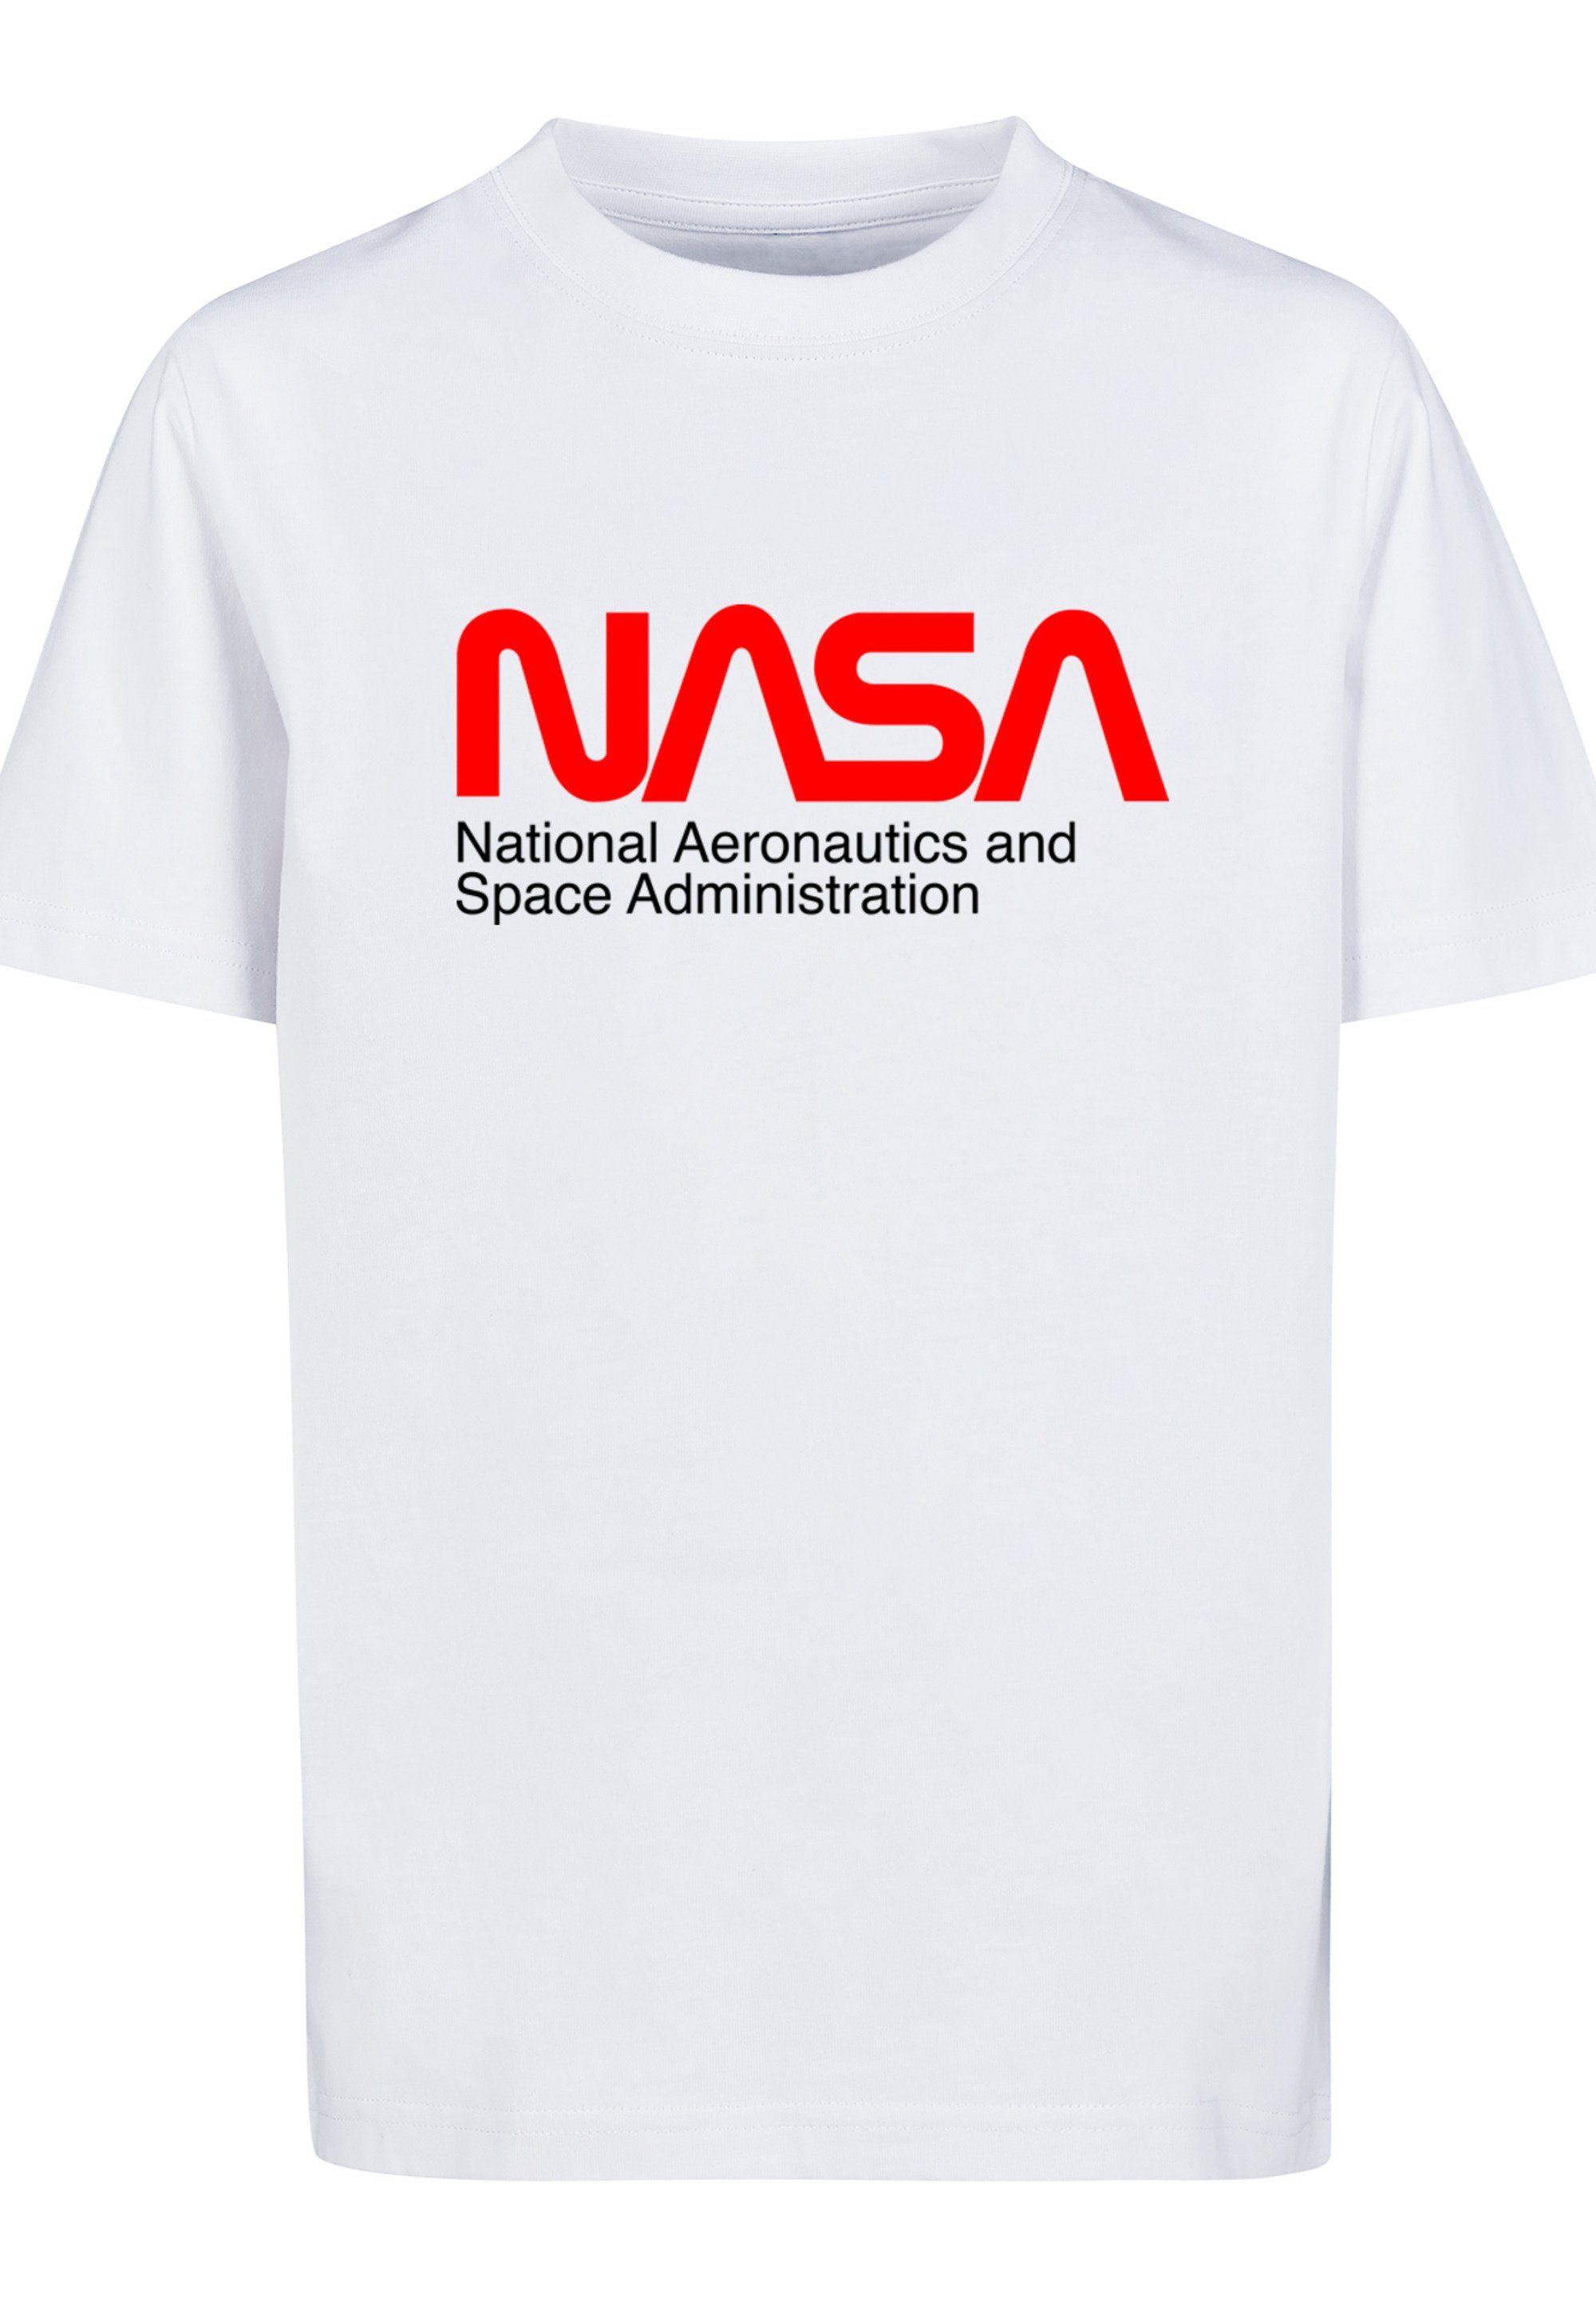 F4NT4STIC T-Shirt NASA Unisex And mit Kinder,Premium Aeronautics hohem Space Merch, Tragekomfort Sehr Jungen,Mädchen,Bedruckt, Baumwollstoff weicher